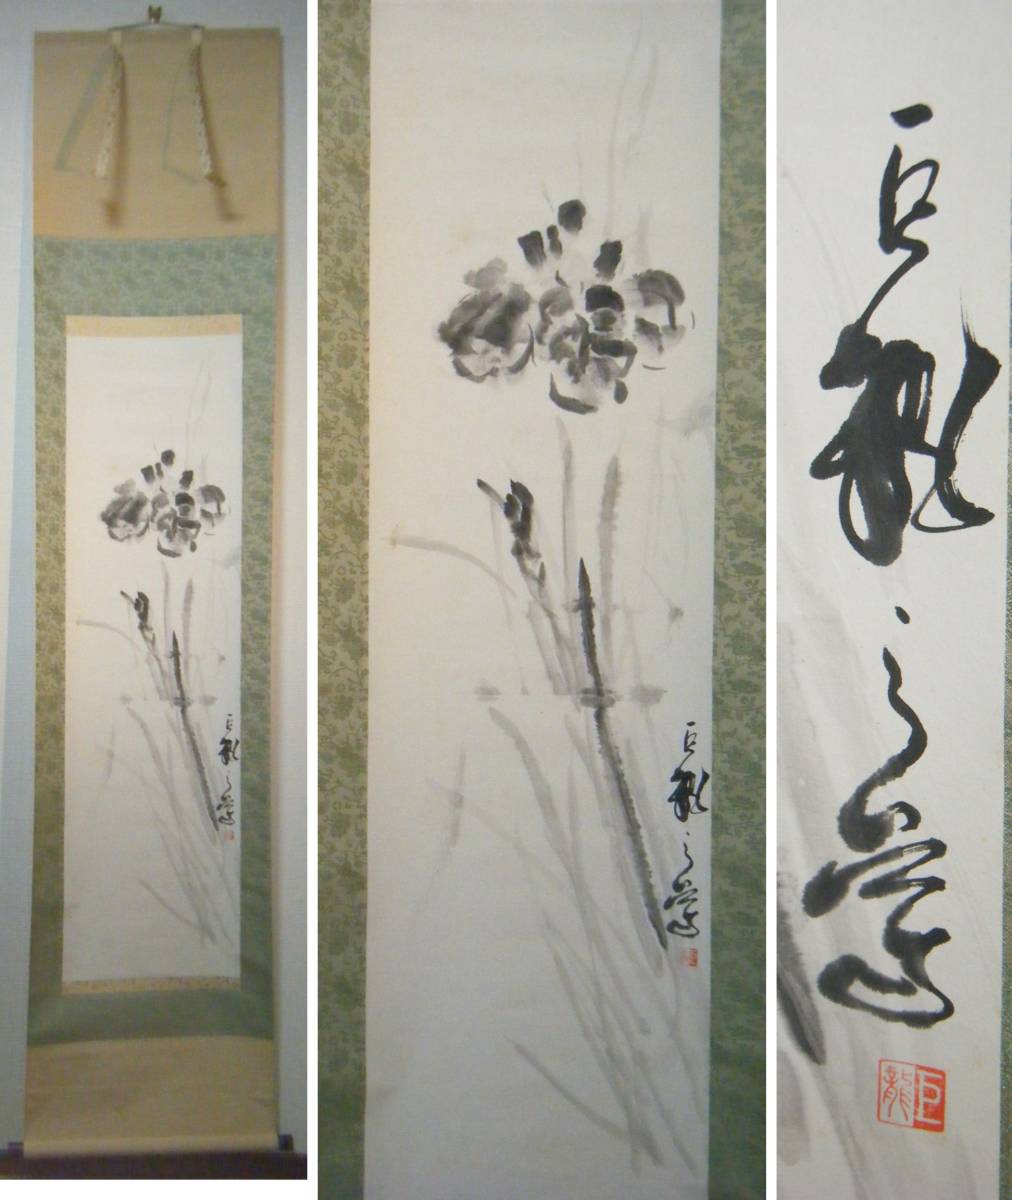 [Authentisch] Hängerolle mit einem riesigen Drachen und einem Blumenmotiv, ausgezeichnetes Stück L153, Malerei, Japanische Malerei, Blumen und Vögel, Tierwelt